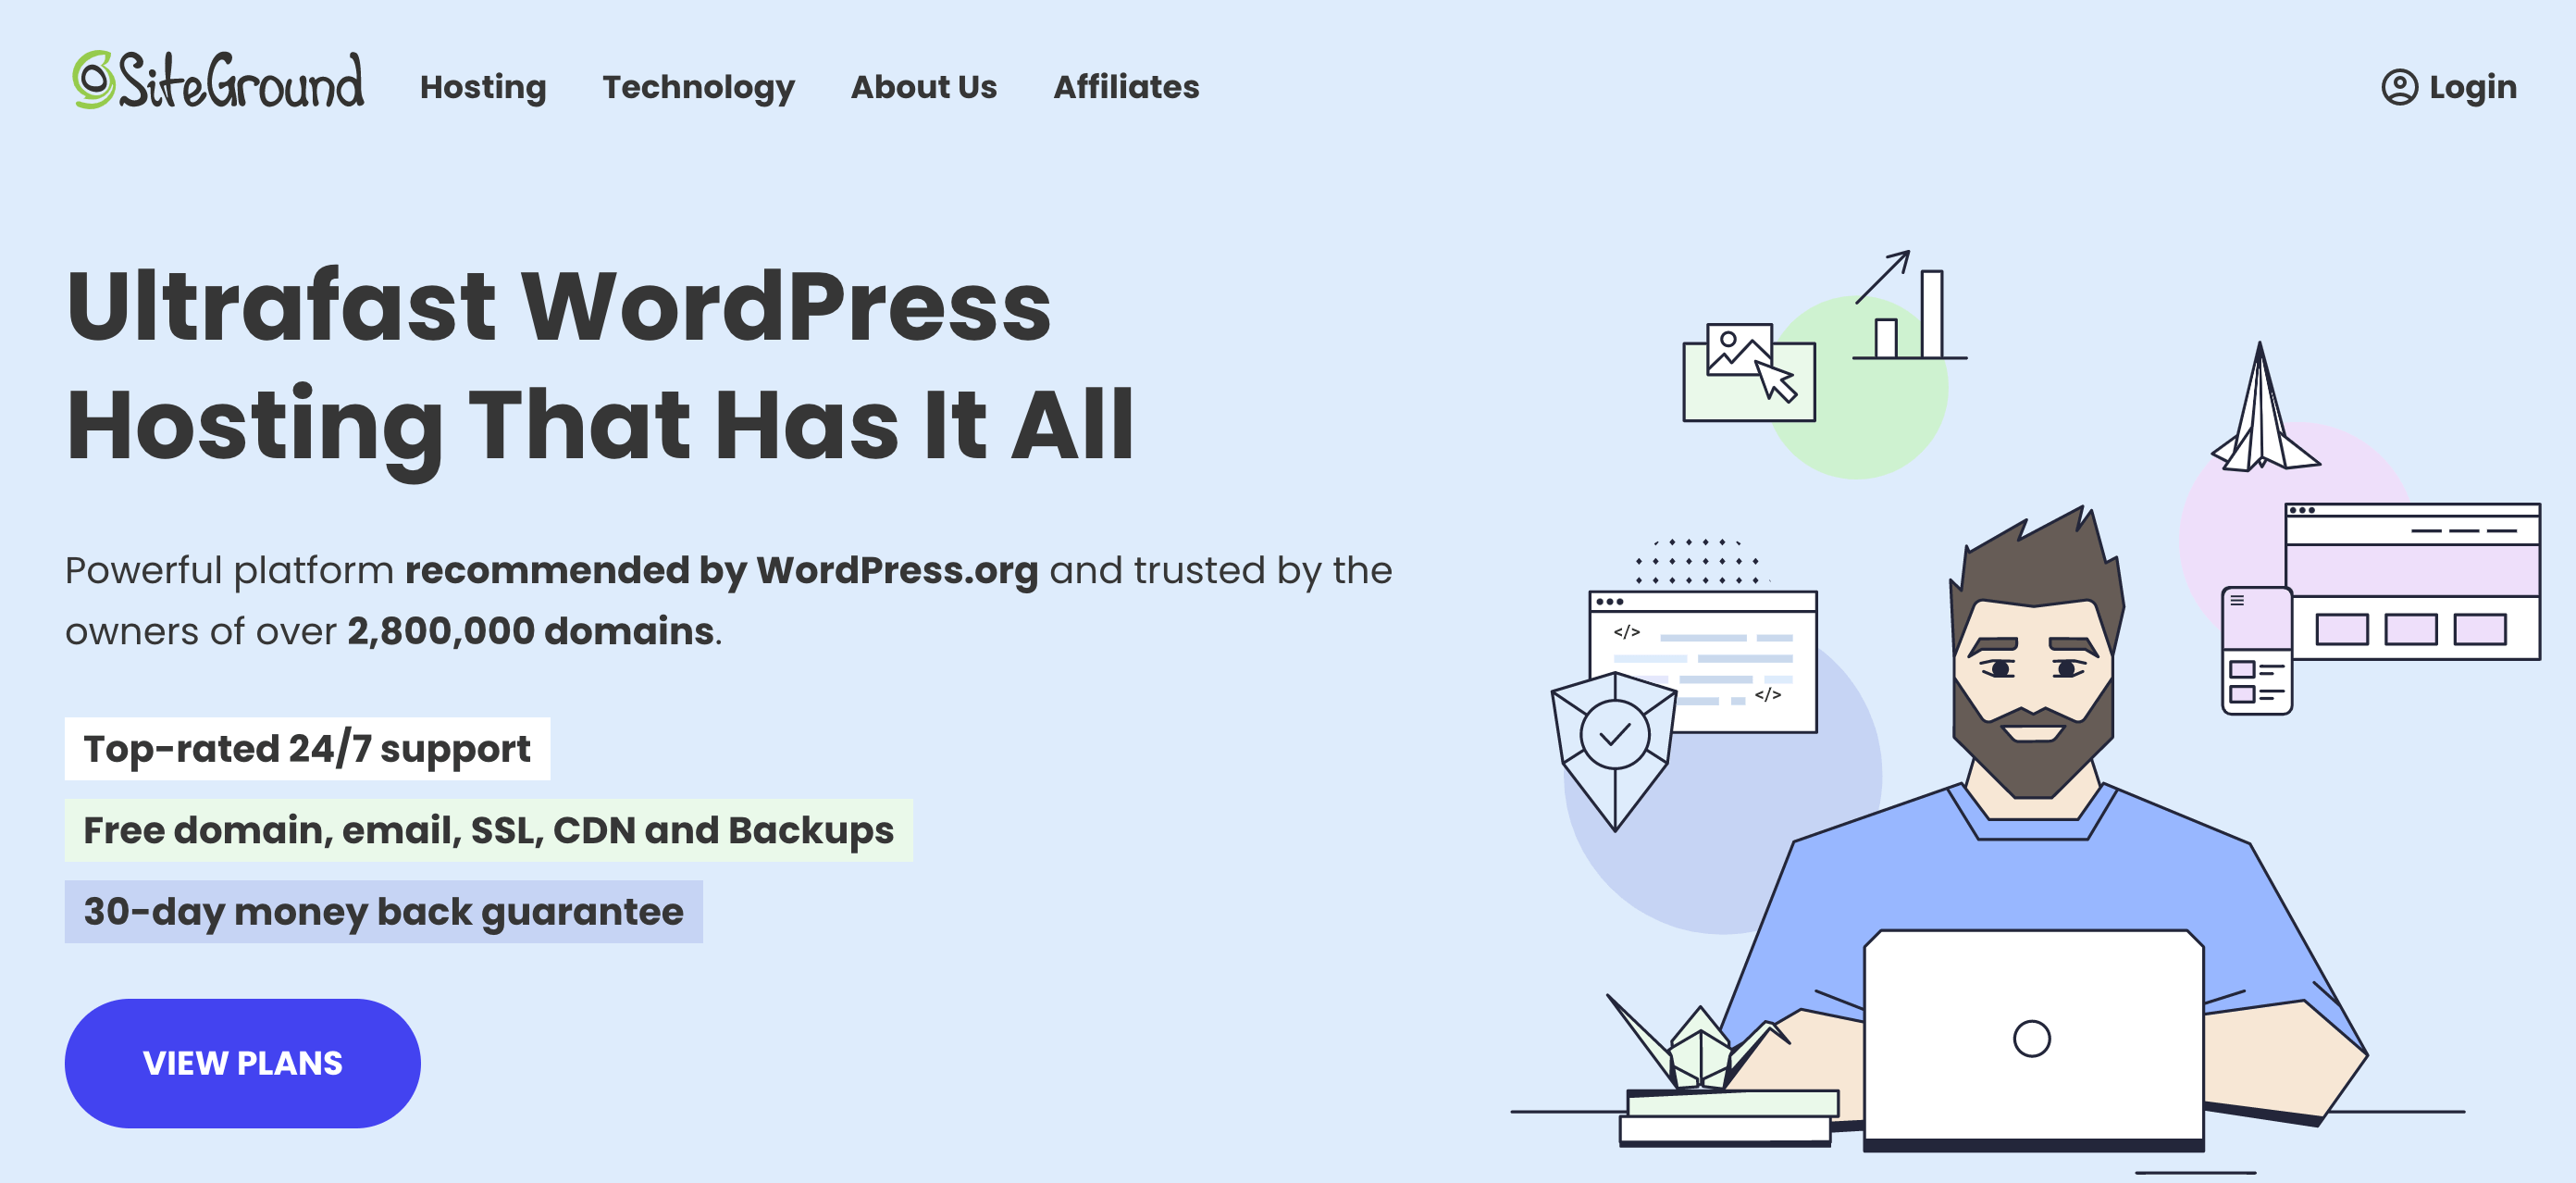 Top WordPress Hosting Providers